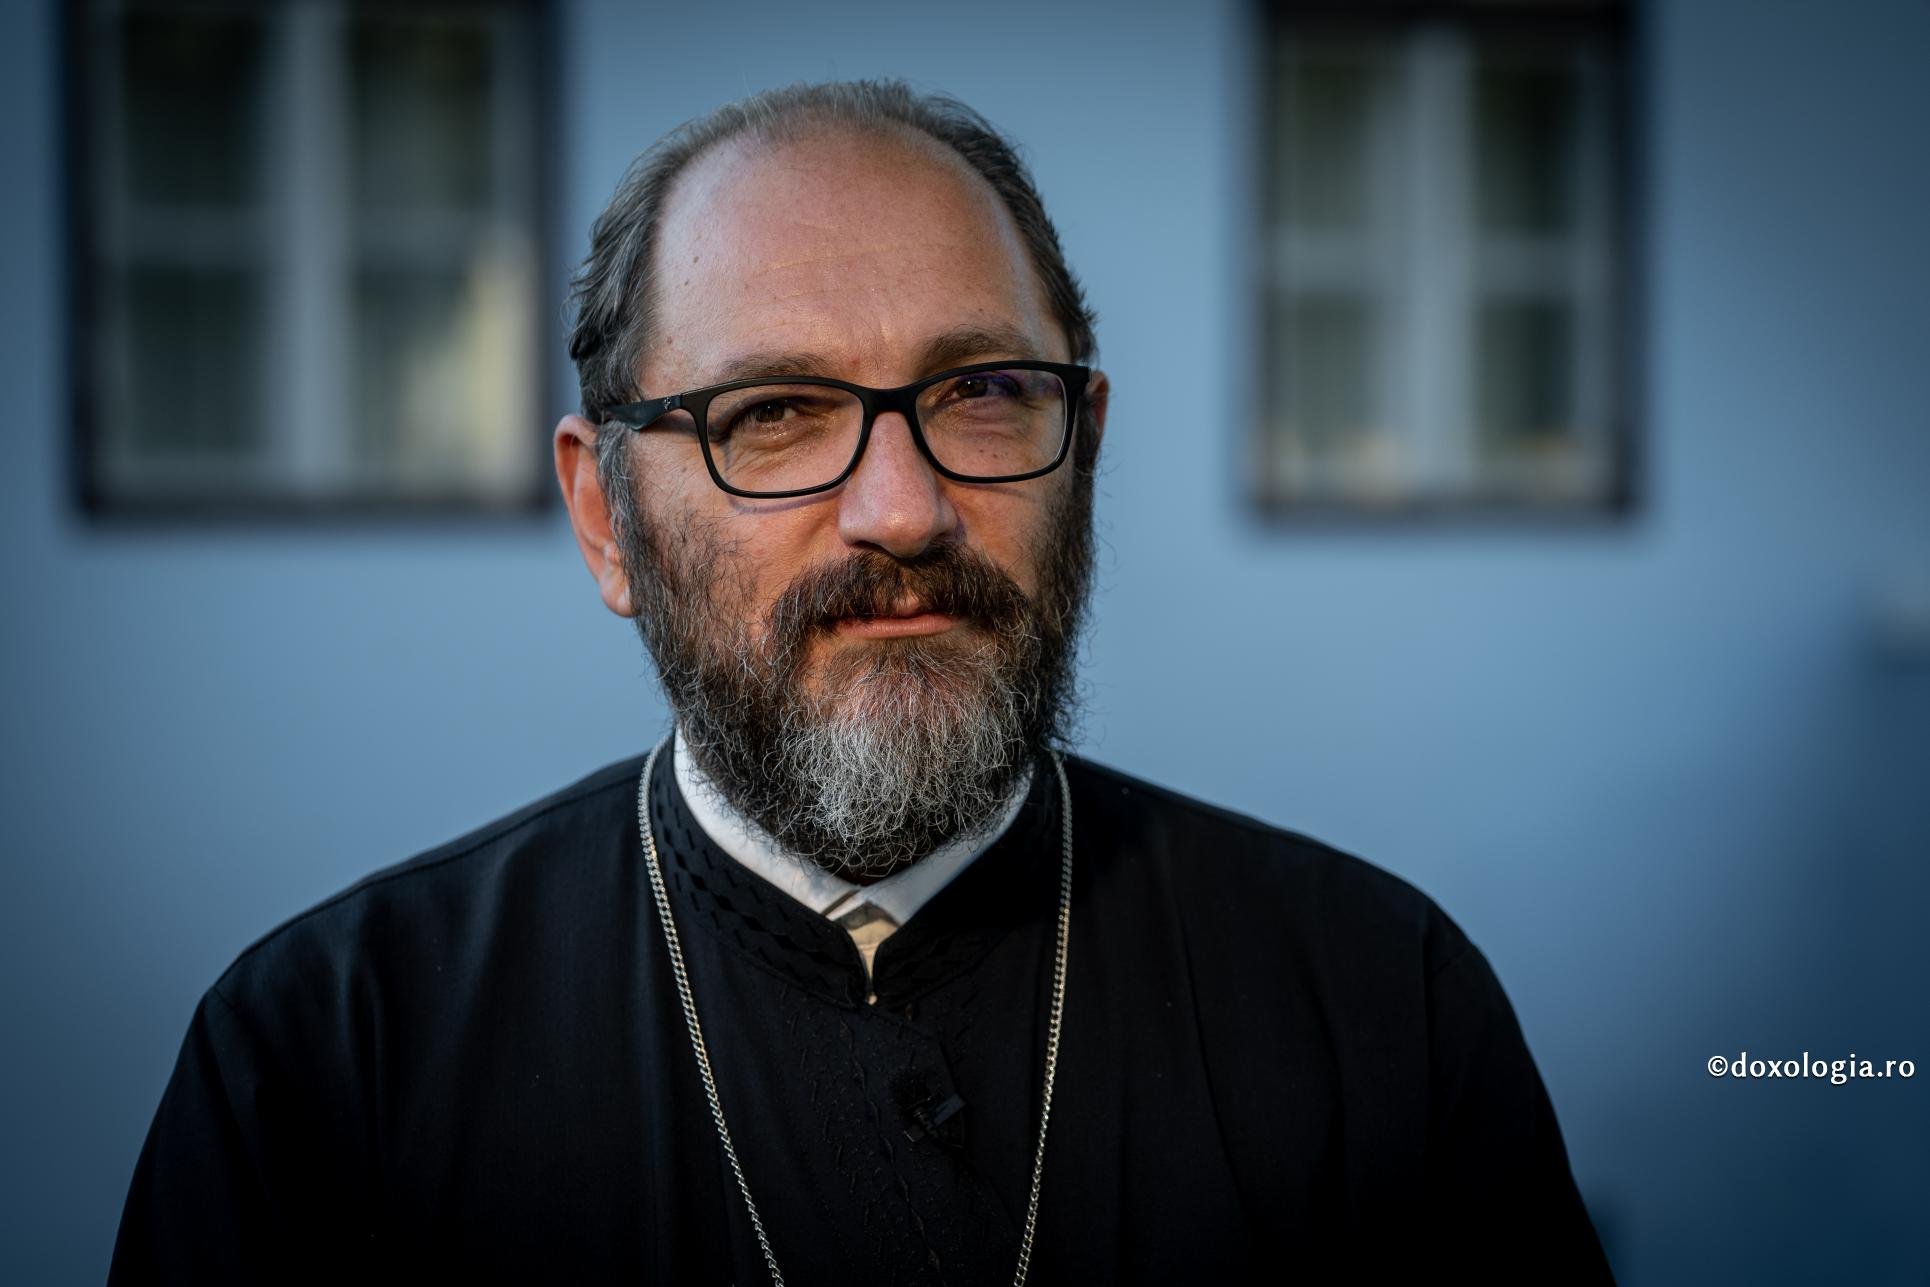  Părintele Constantin Necula: „Putin a murit fără să ştie. Să ne rugăm pentru el”